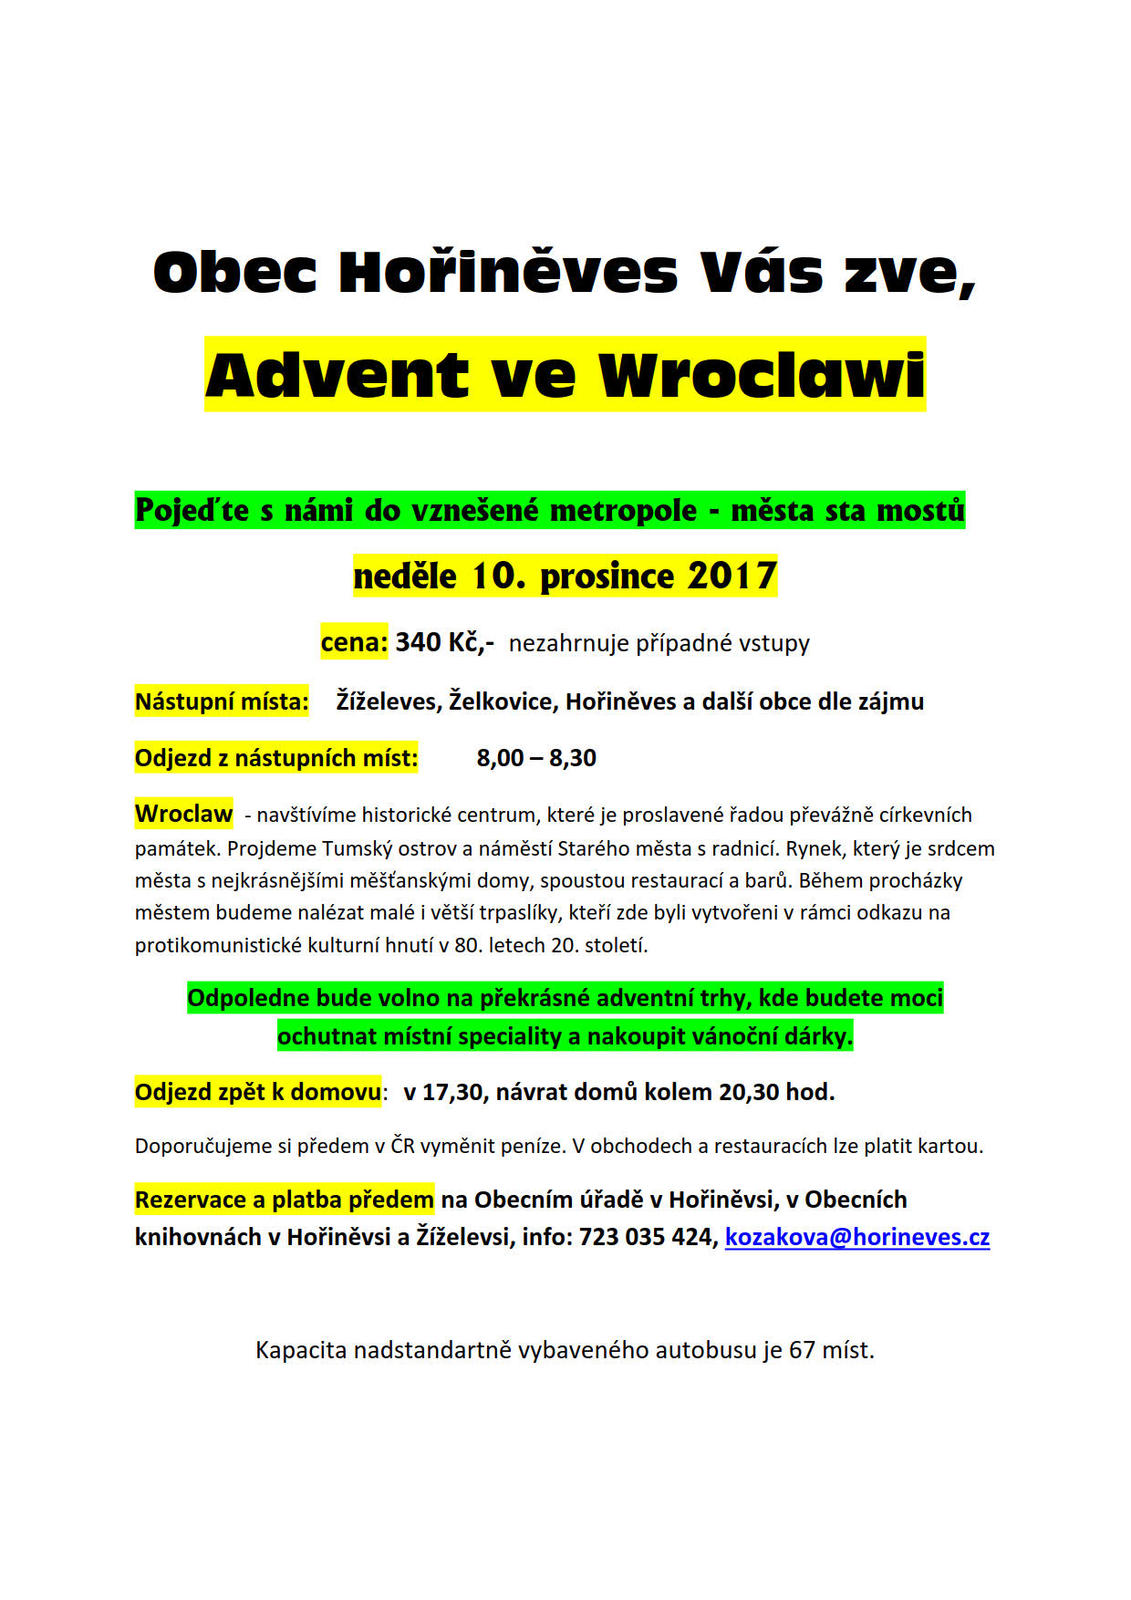 Pozvánka na adventní zájezd do Wroclawi